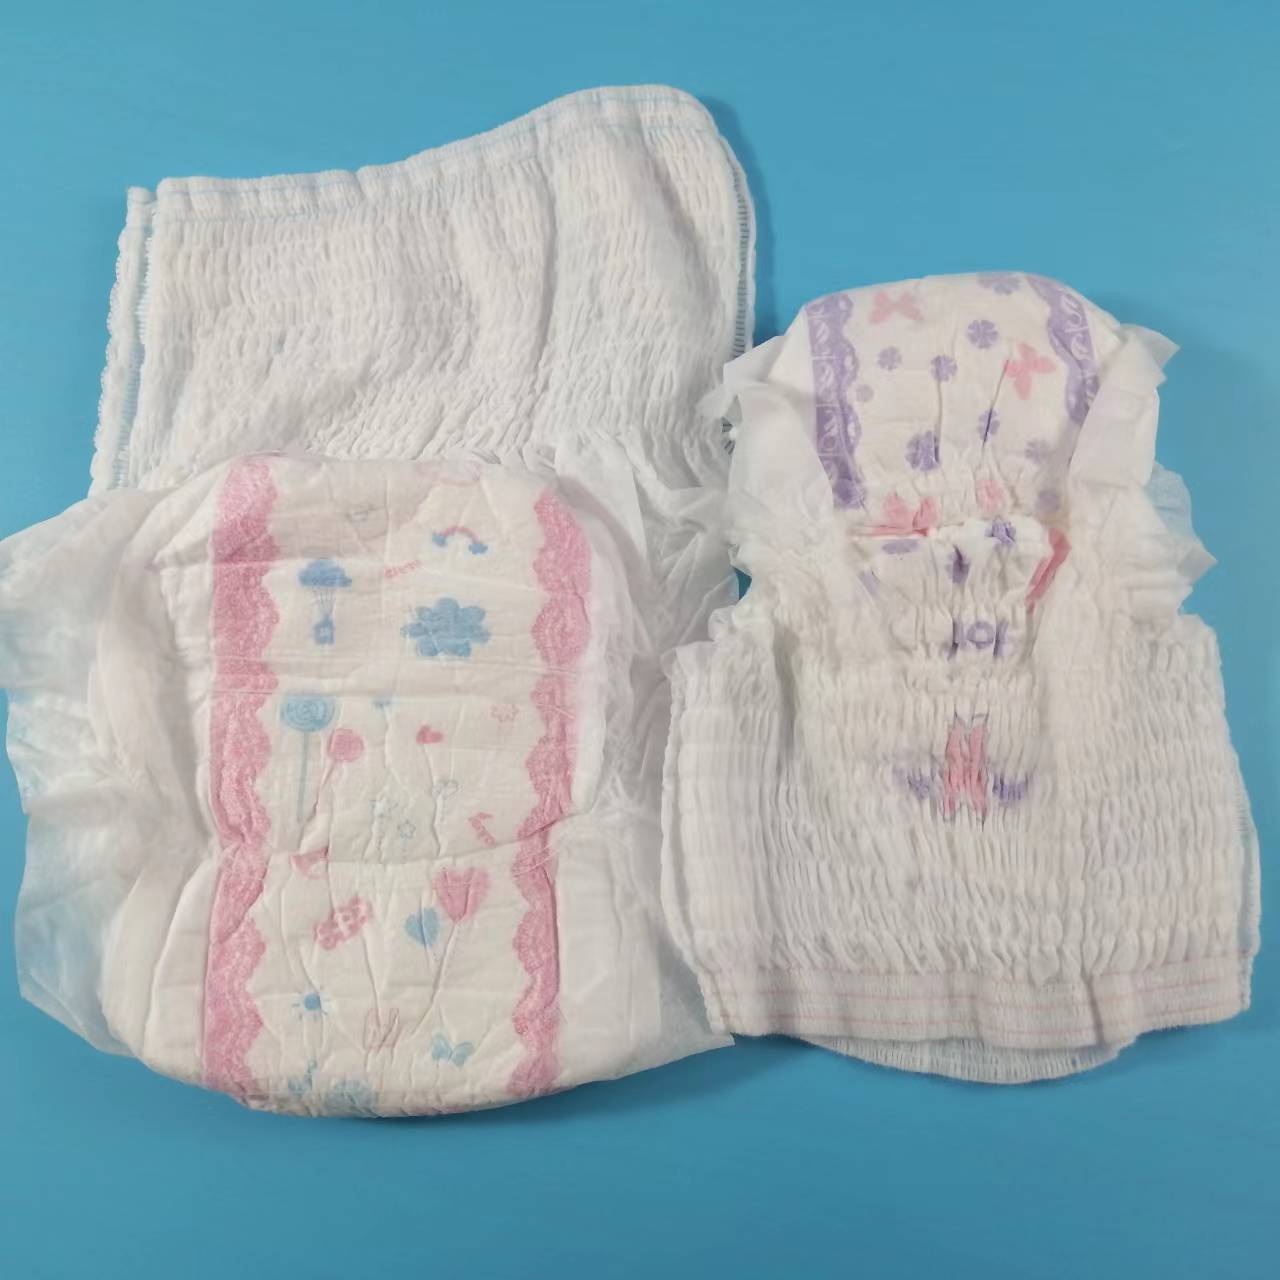 Precio barato, desechable, transpirable y saludable, tela no tejida caliente, tipo panty de servilleta sanitaria de alta calidad, fabricado en China